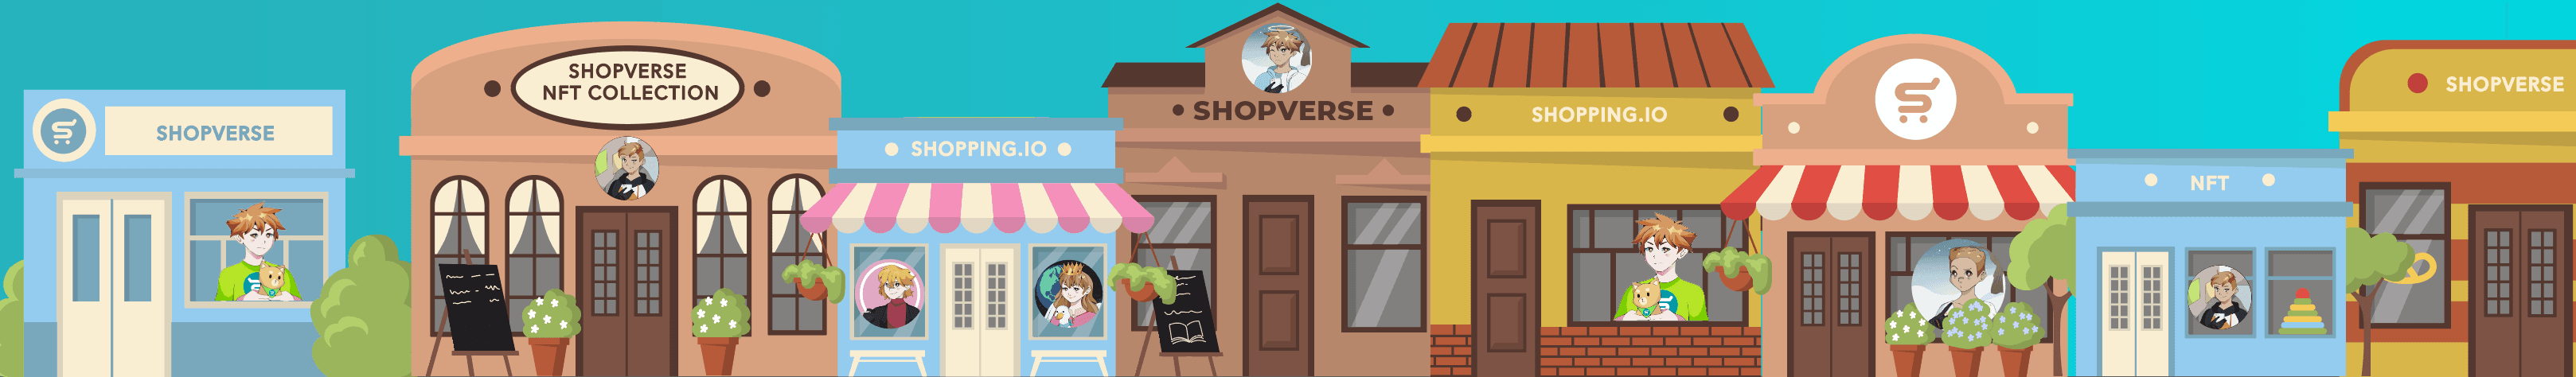 Shopverse